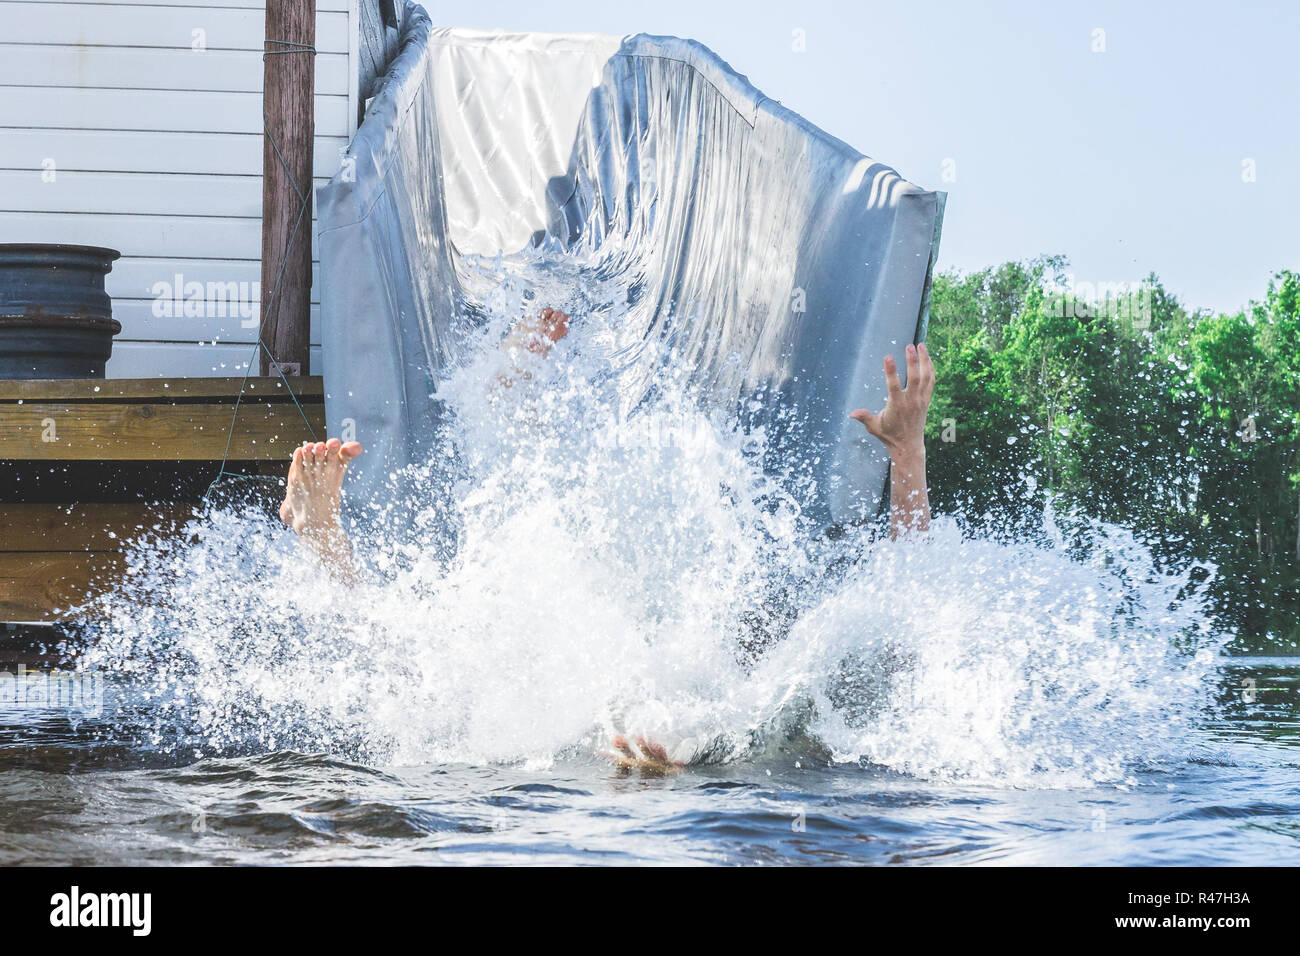 Die Beine und Arme von einer Person auf eine riesige Menge an Wasser spritzen fällt im Sommer am See. Fun Water Entertainment. Stockfoto